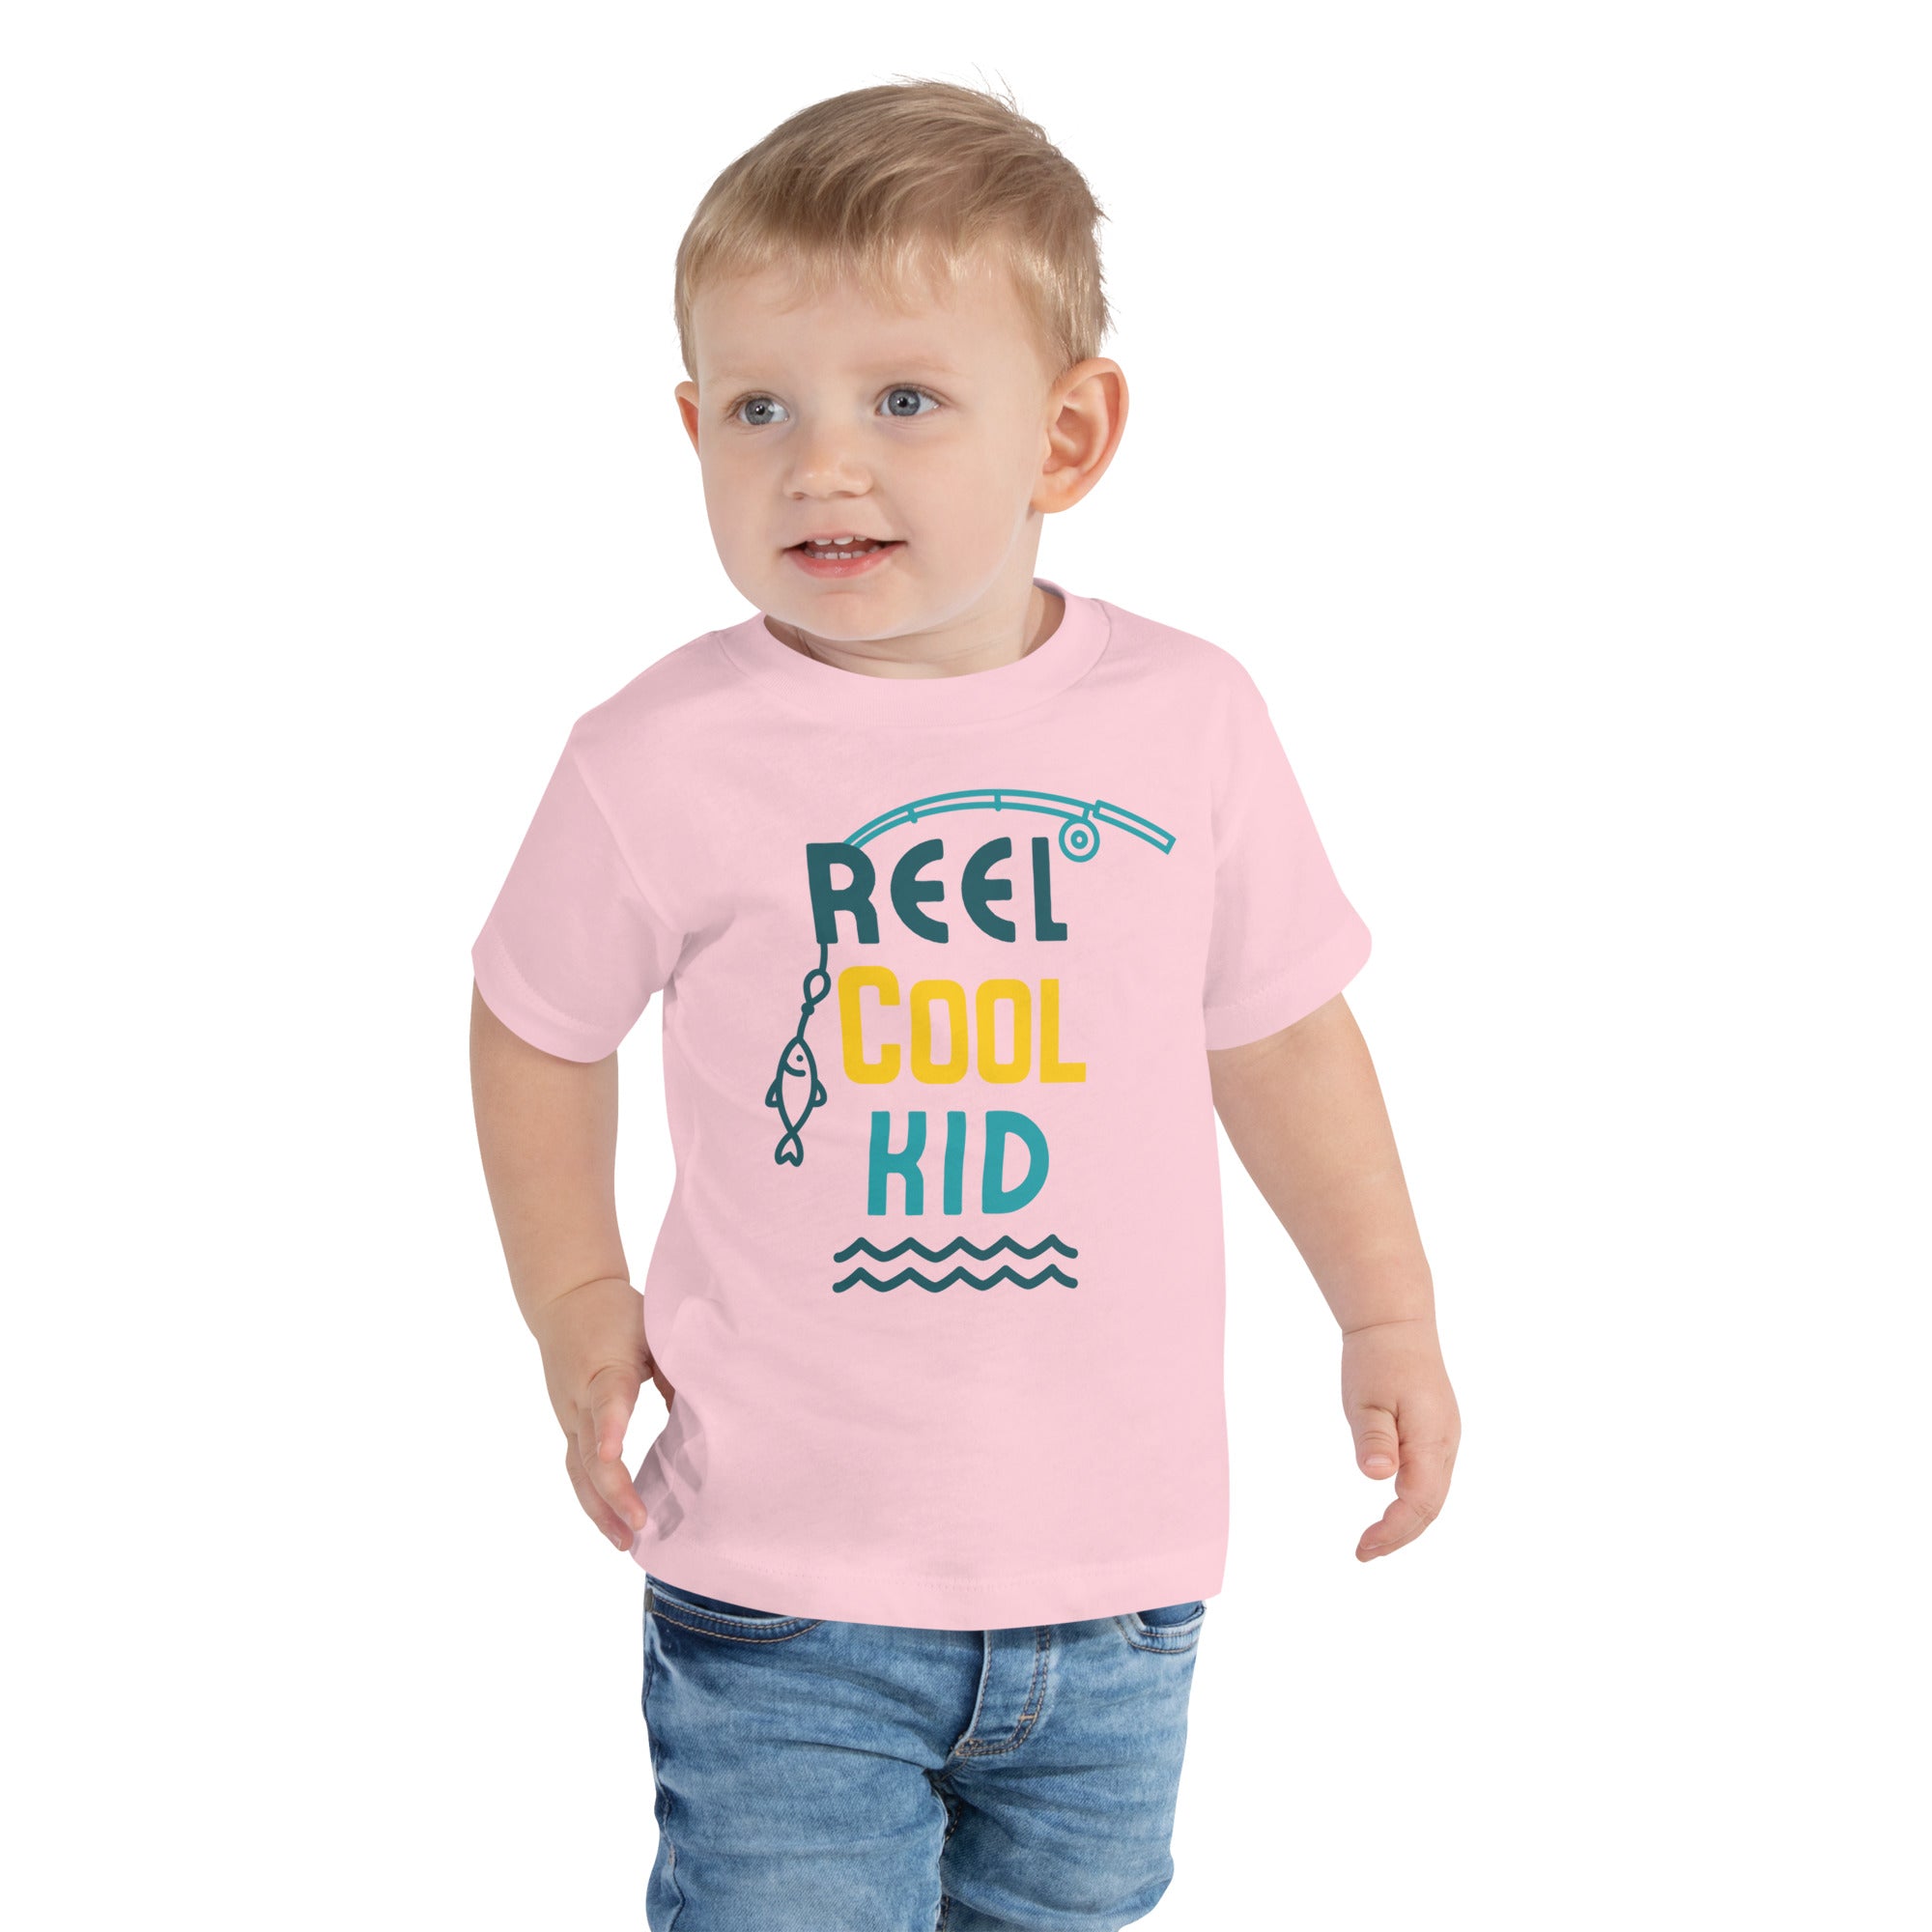 Reel Cool Kid - Toddler Short Sleeve Tee